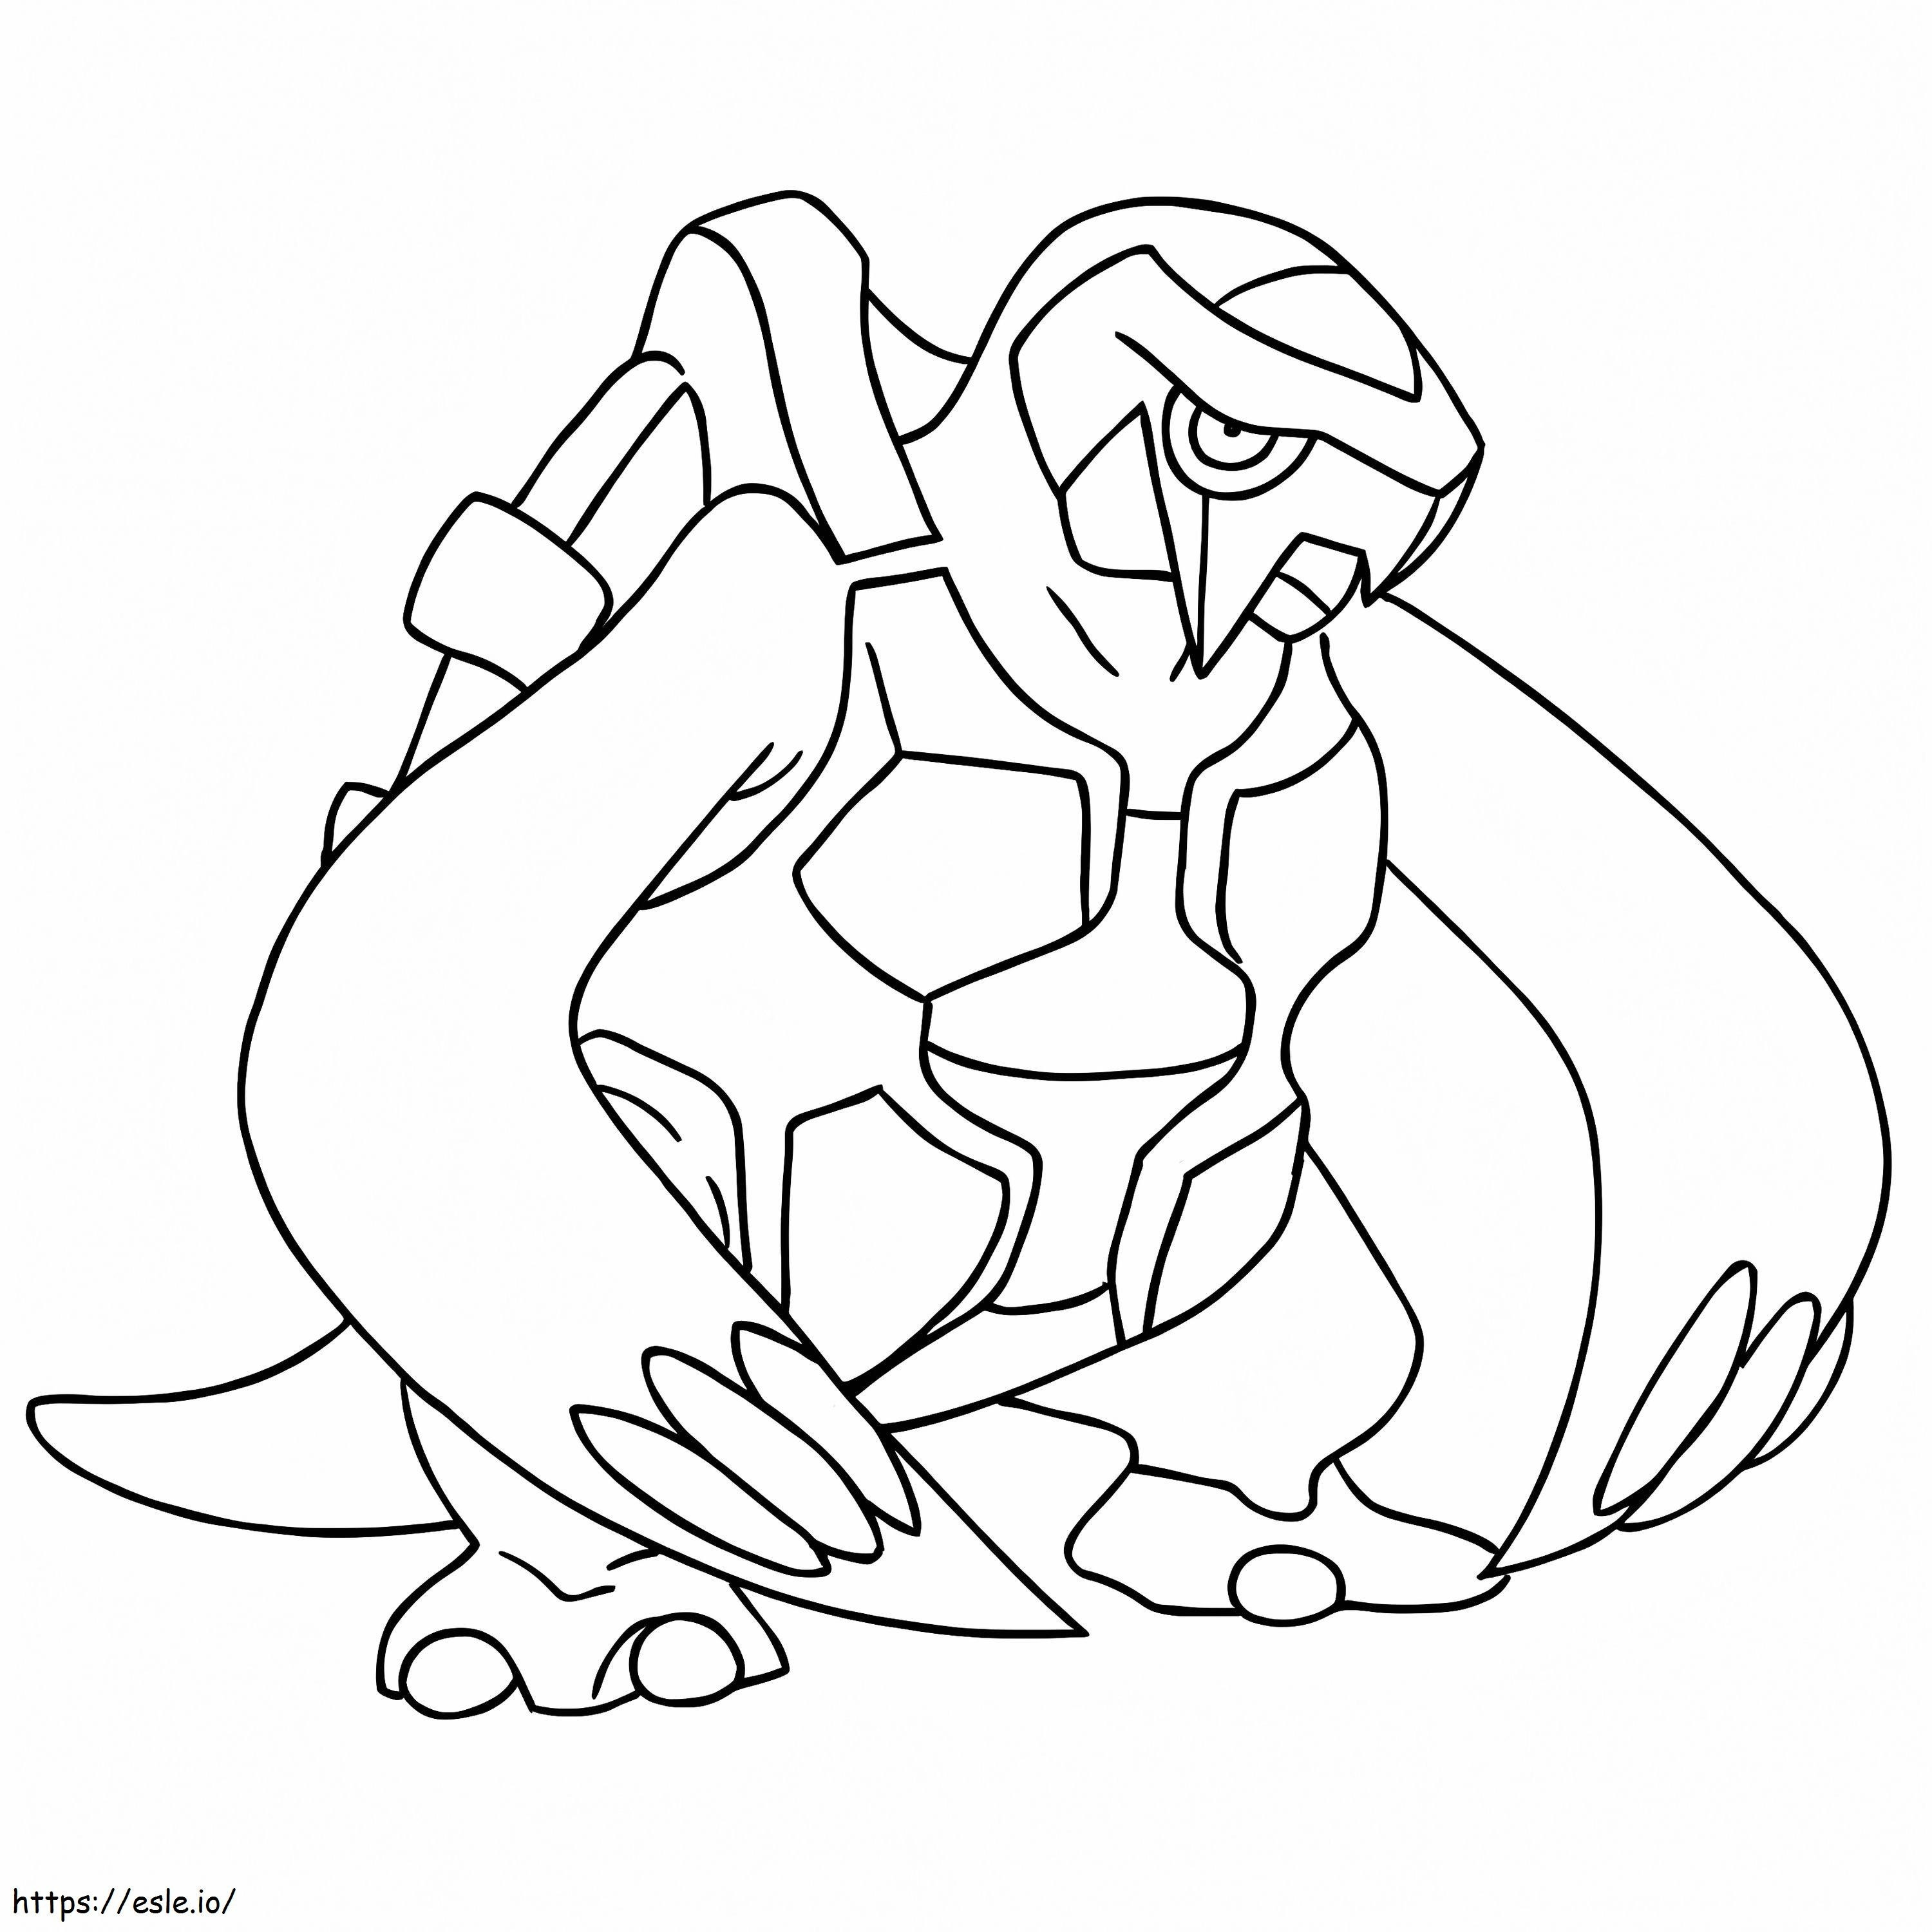 Coloriage Pokémon Carracosta Gen 5 à imprimer dessin